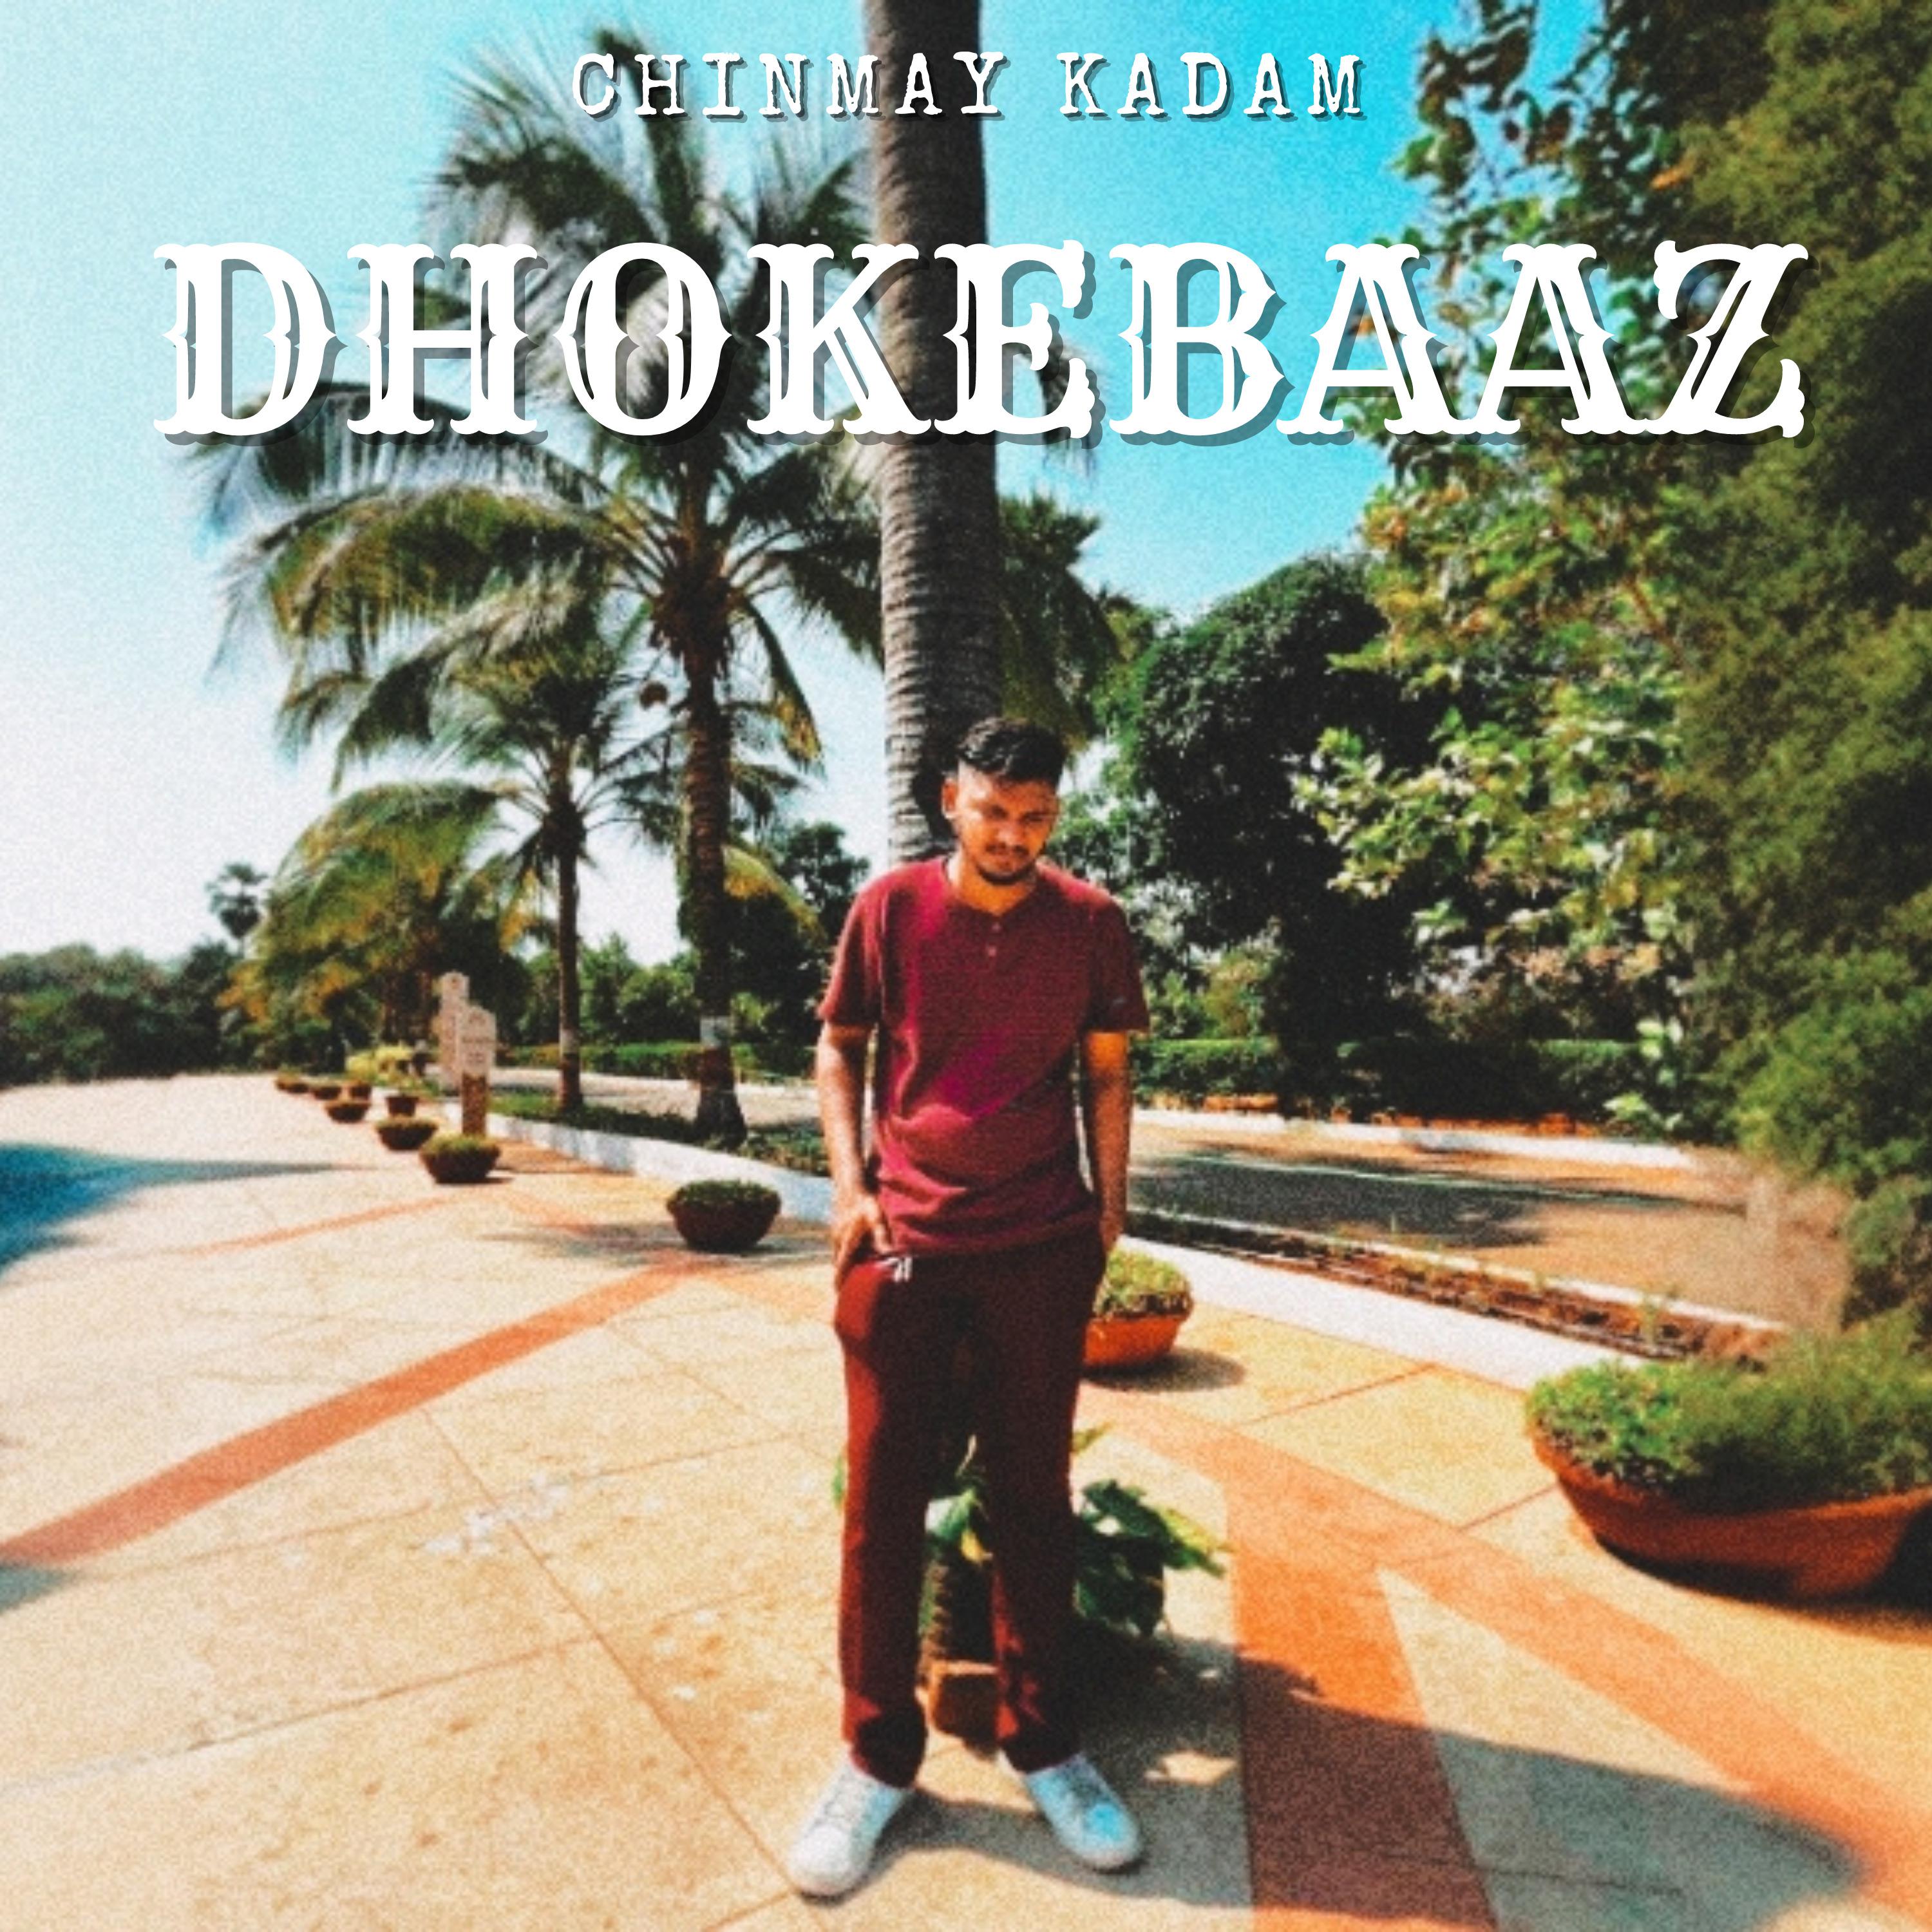 Постер альбома Dhokebaaz